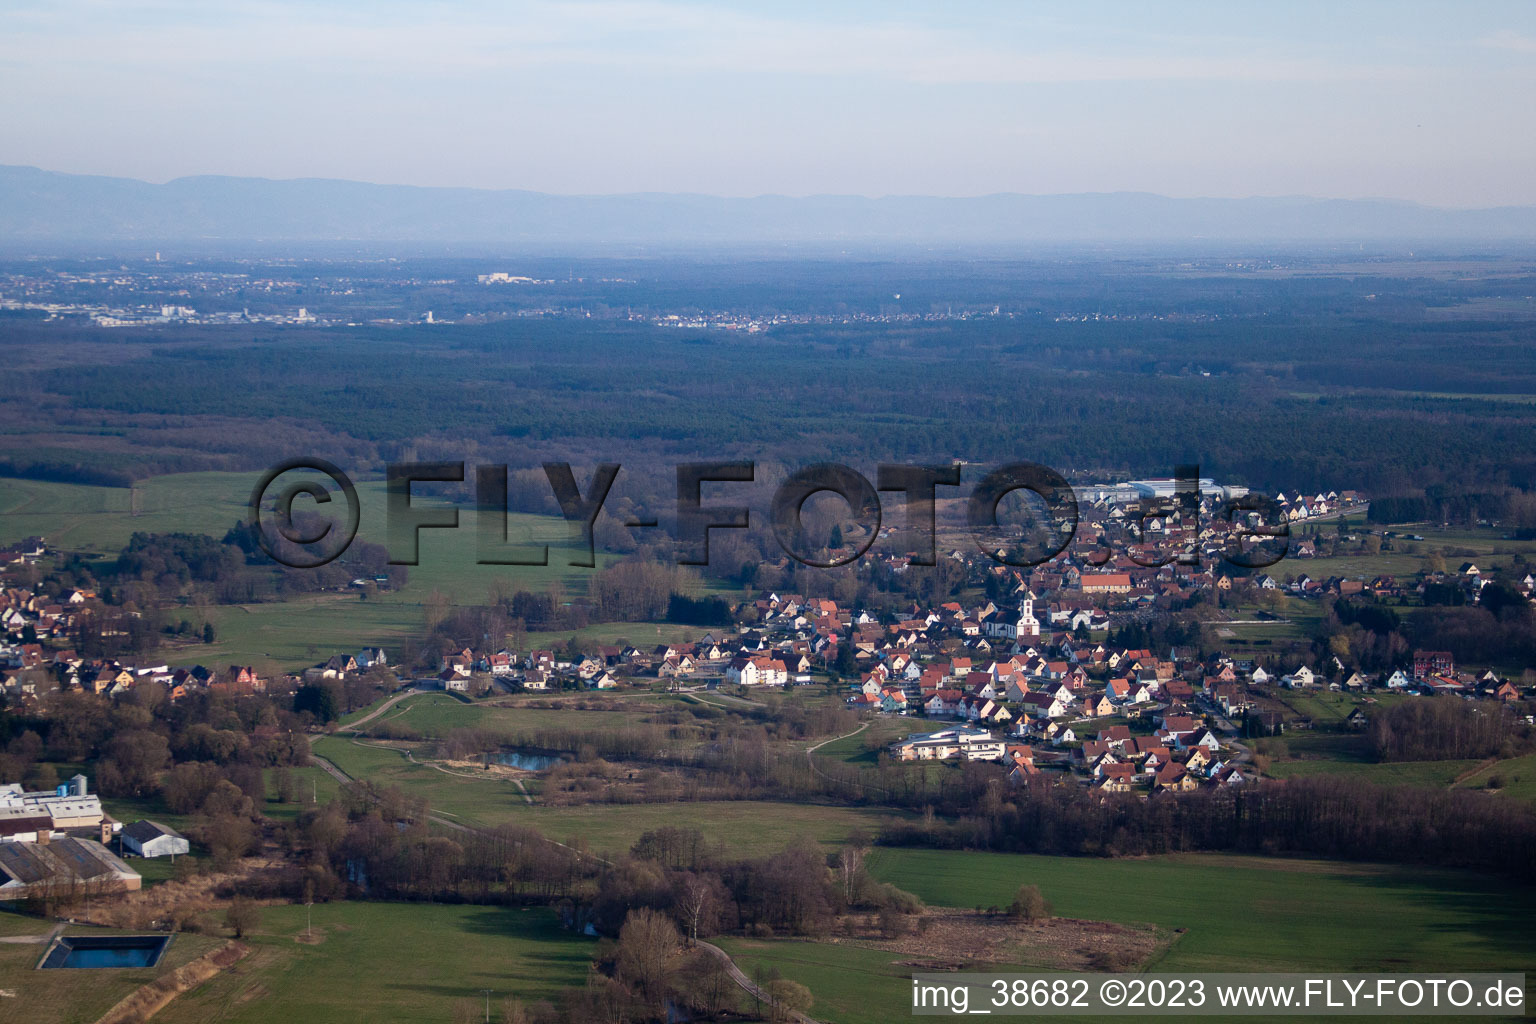 Uttenhoffen dans le département Bas Rhin, France vu d'un drone